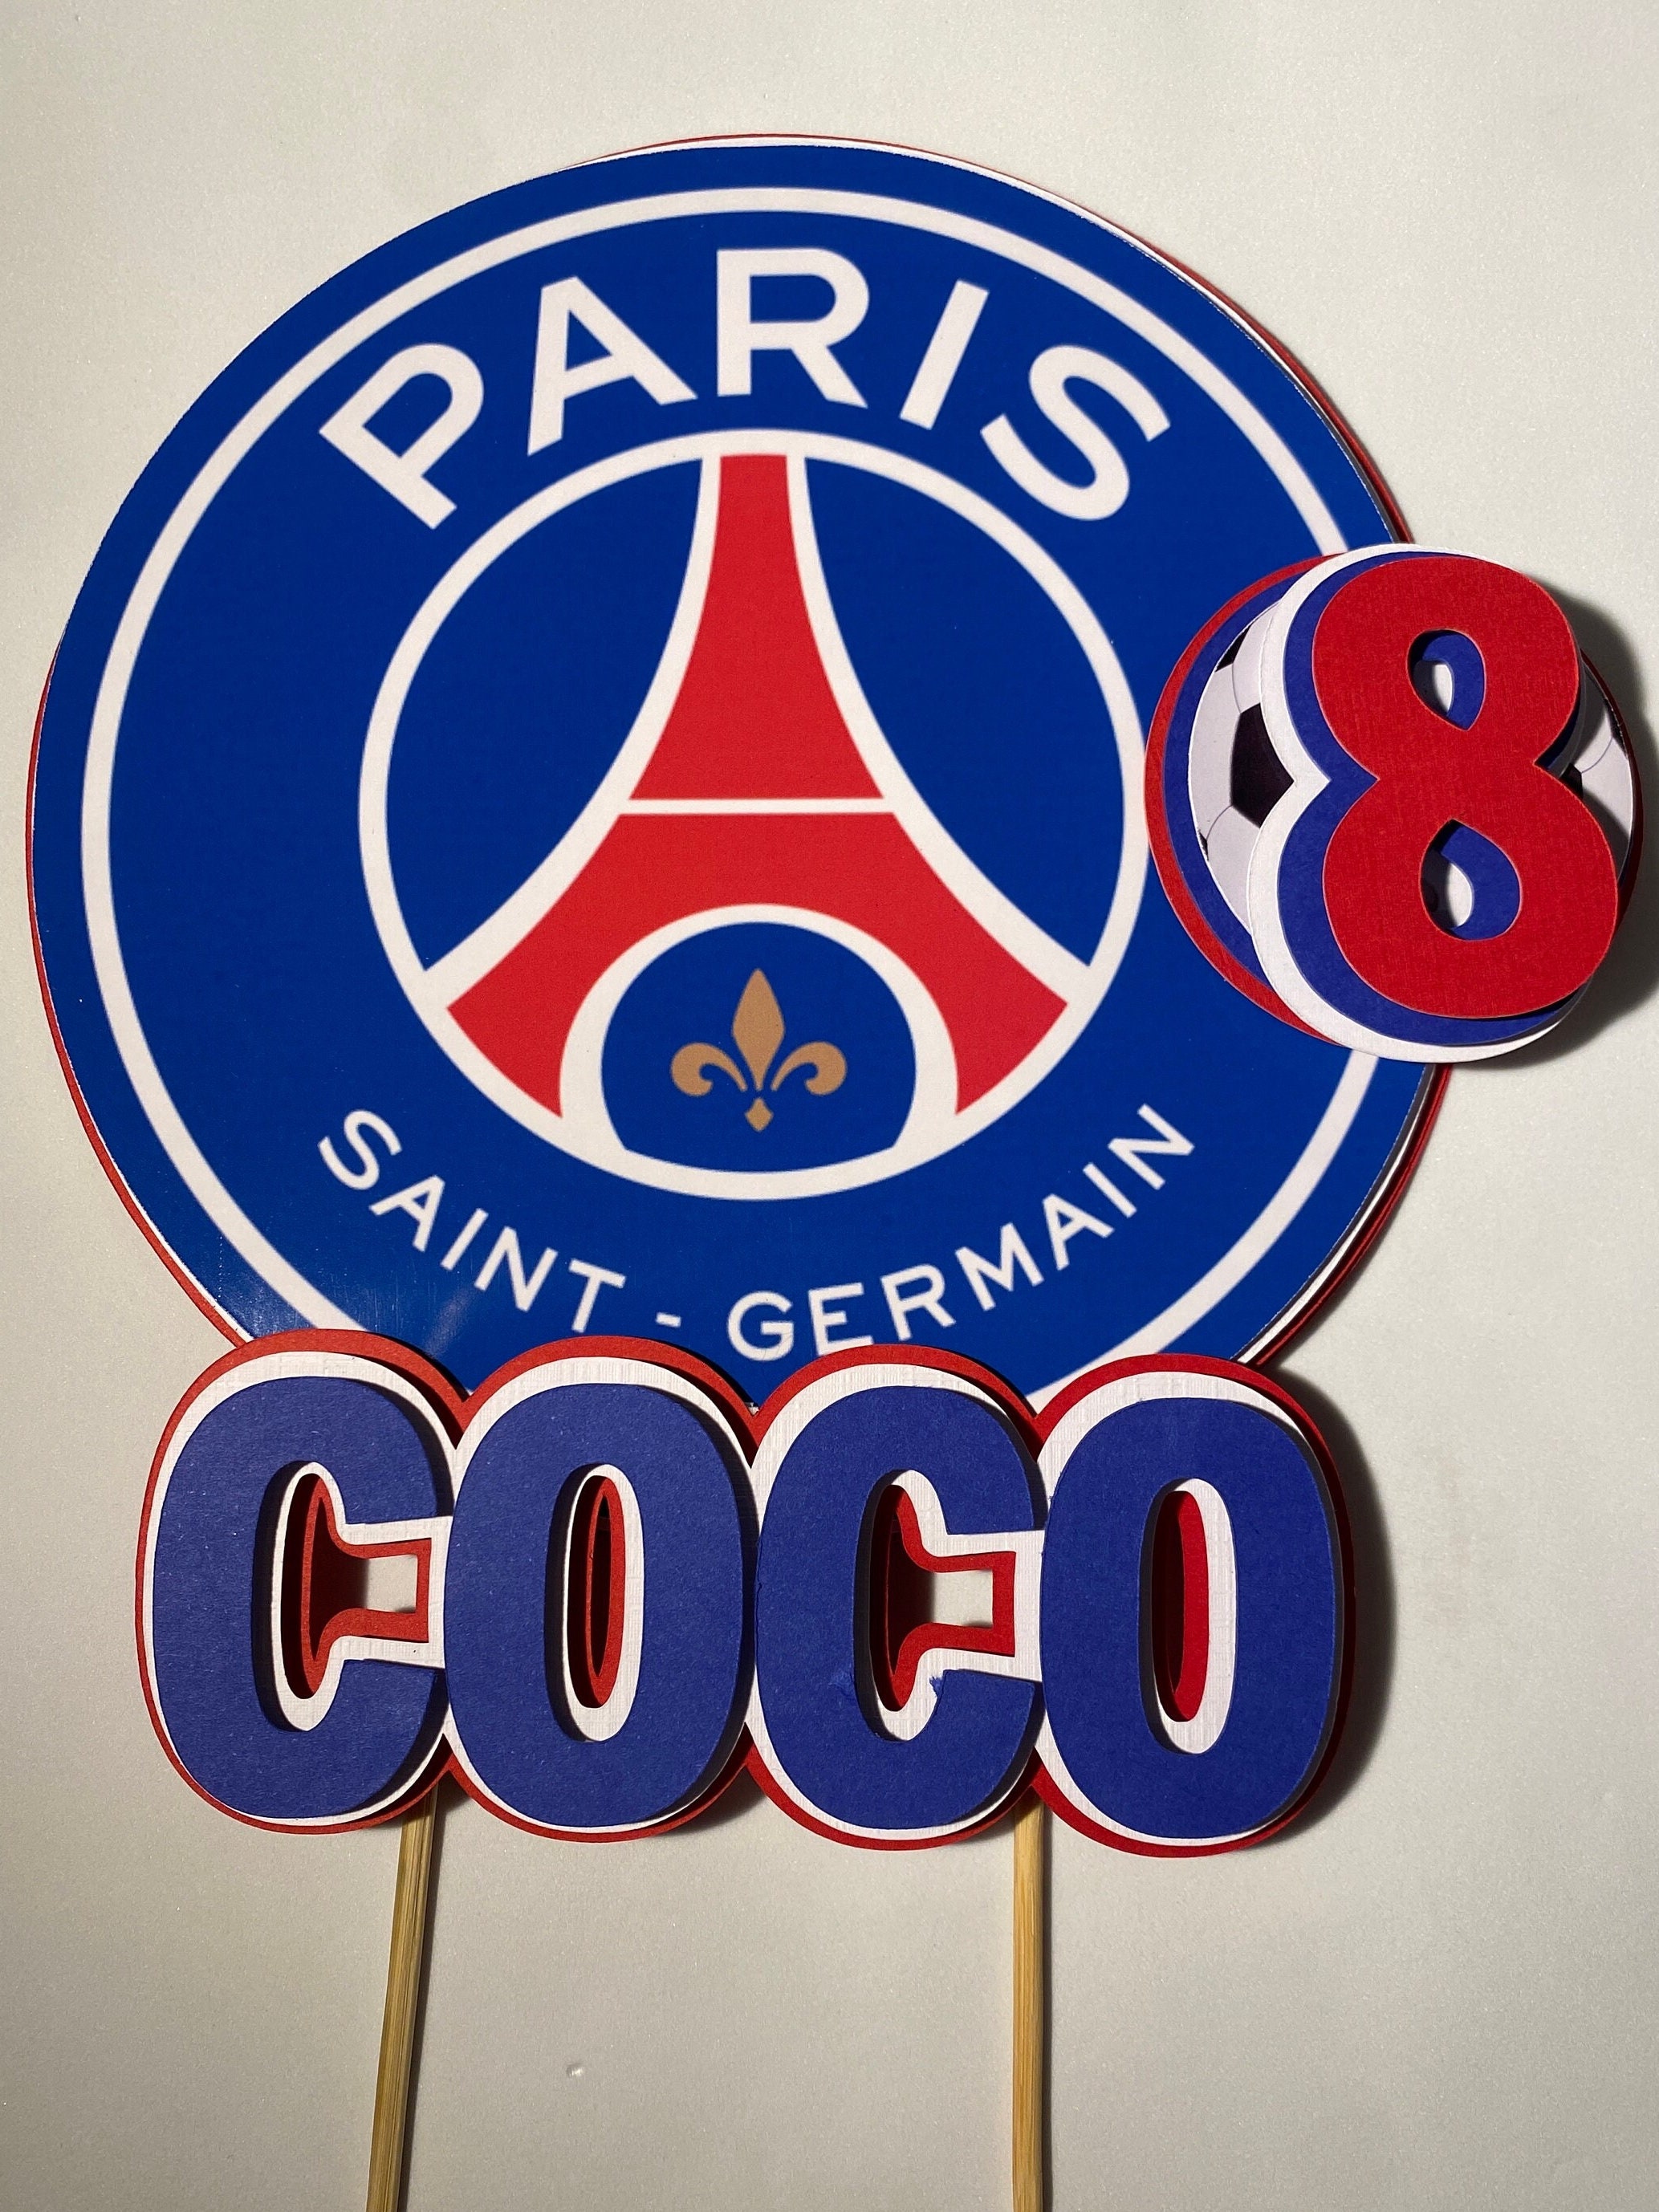 Paris Saint Germain Stickers die cut avec bordures blanches 3